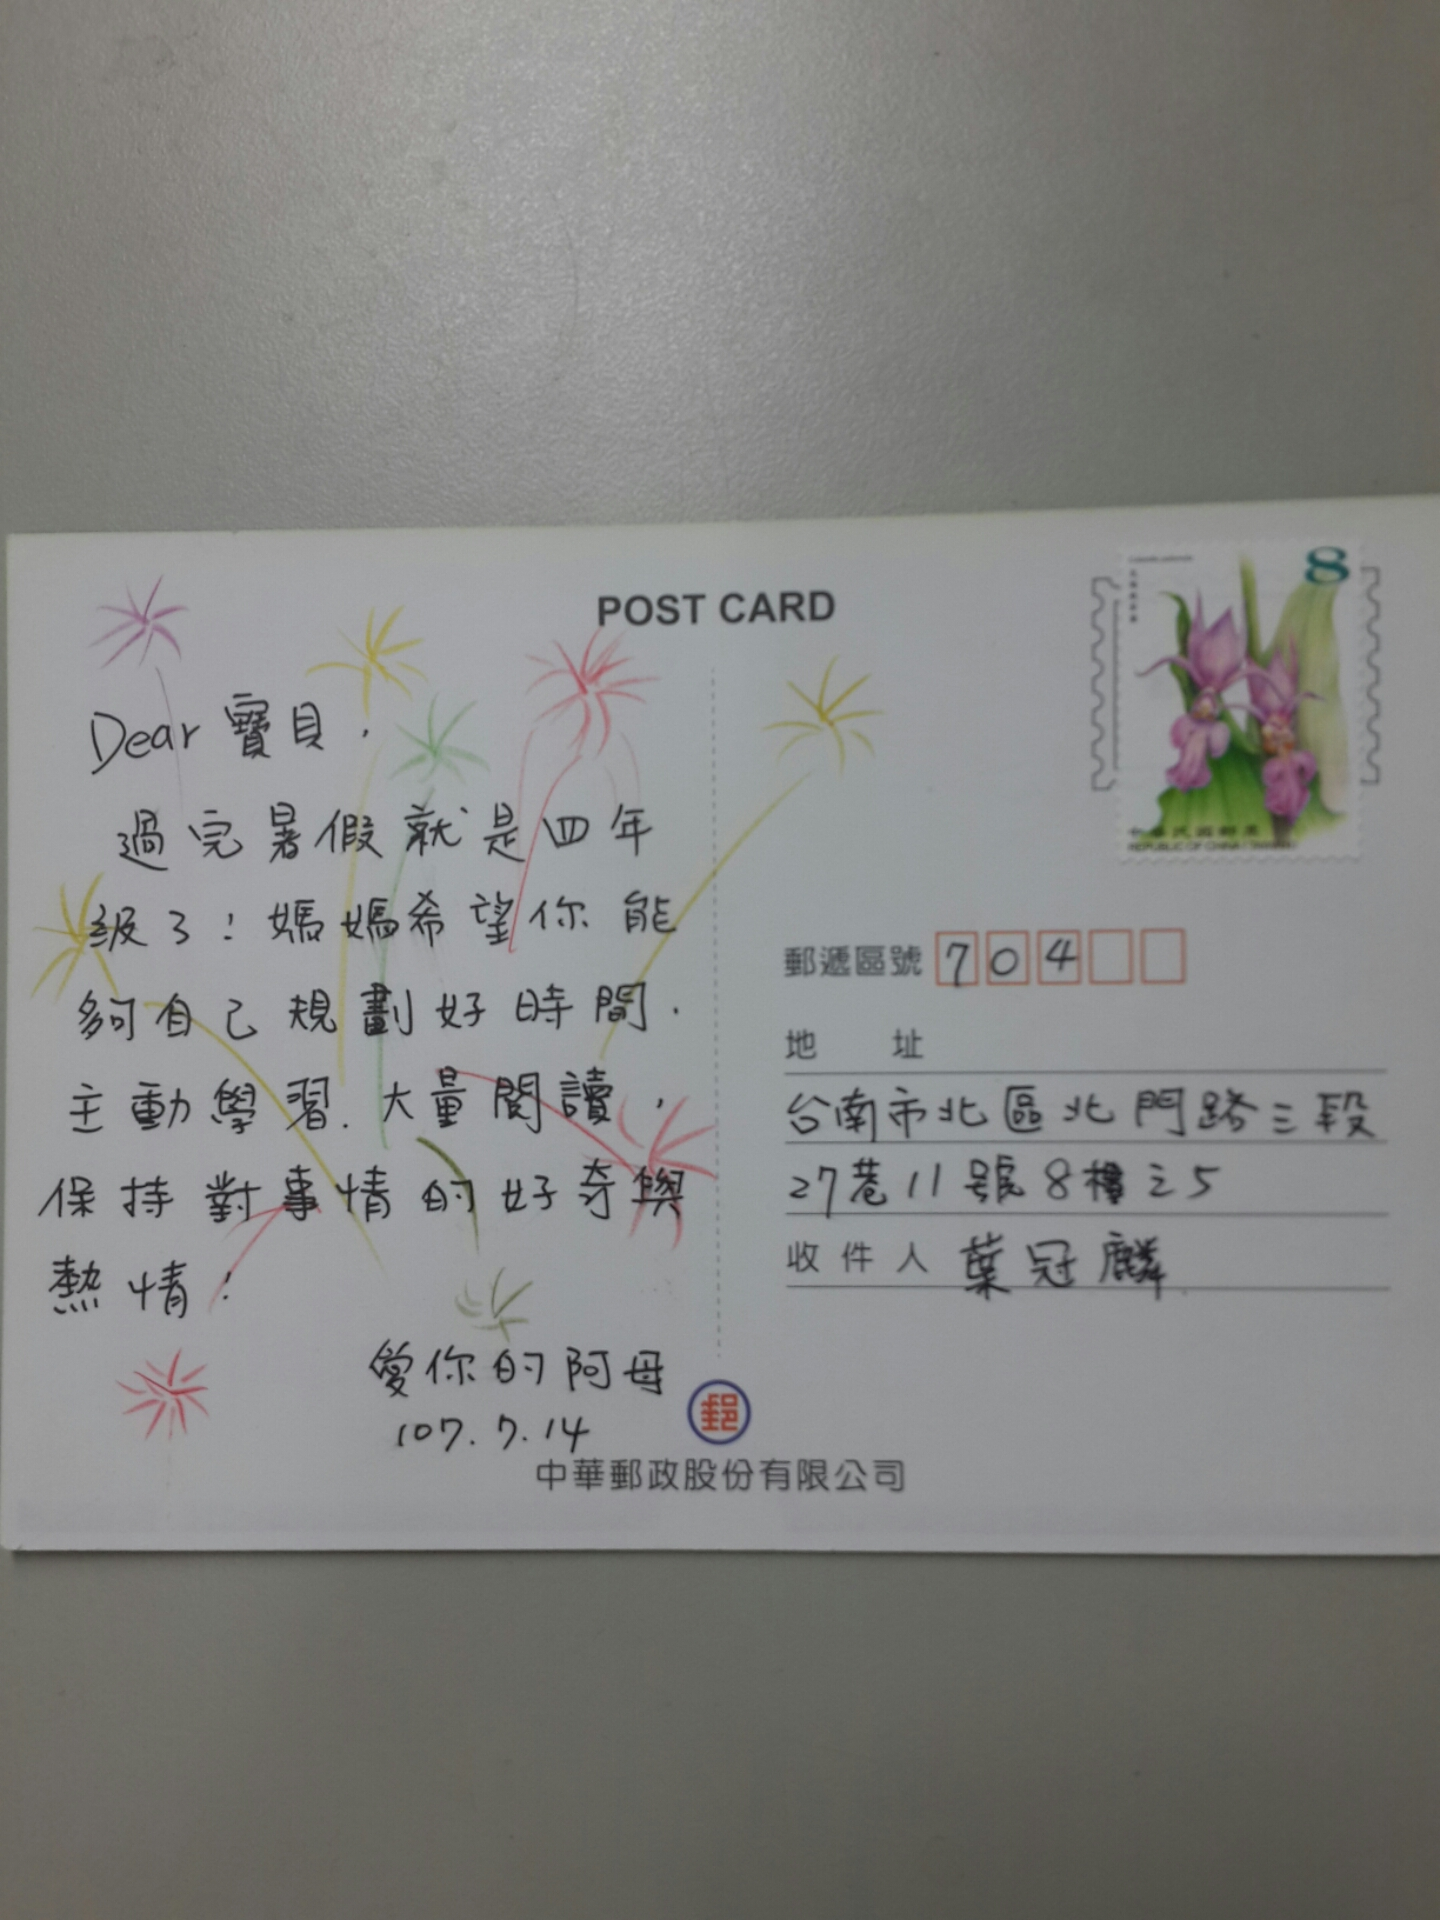 臺南郵局107年暑期親子集郵研習營活動